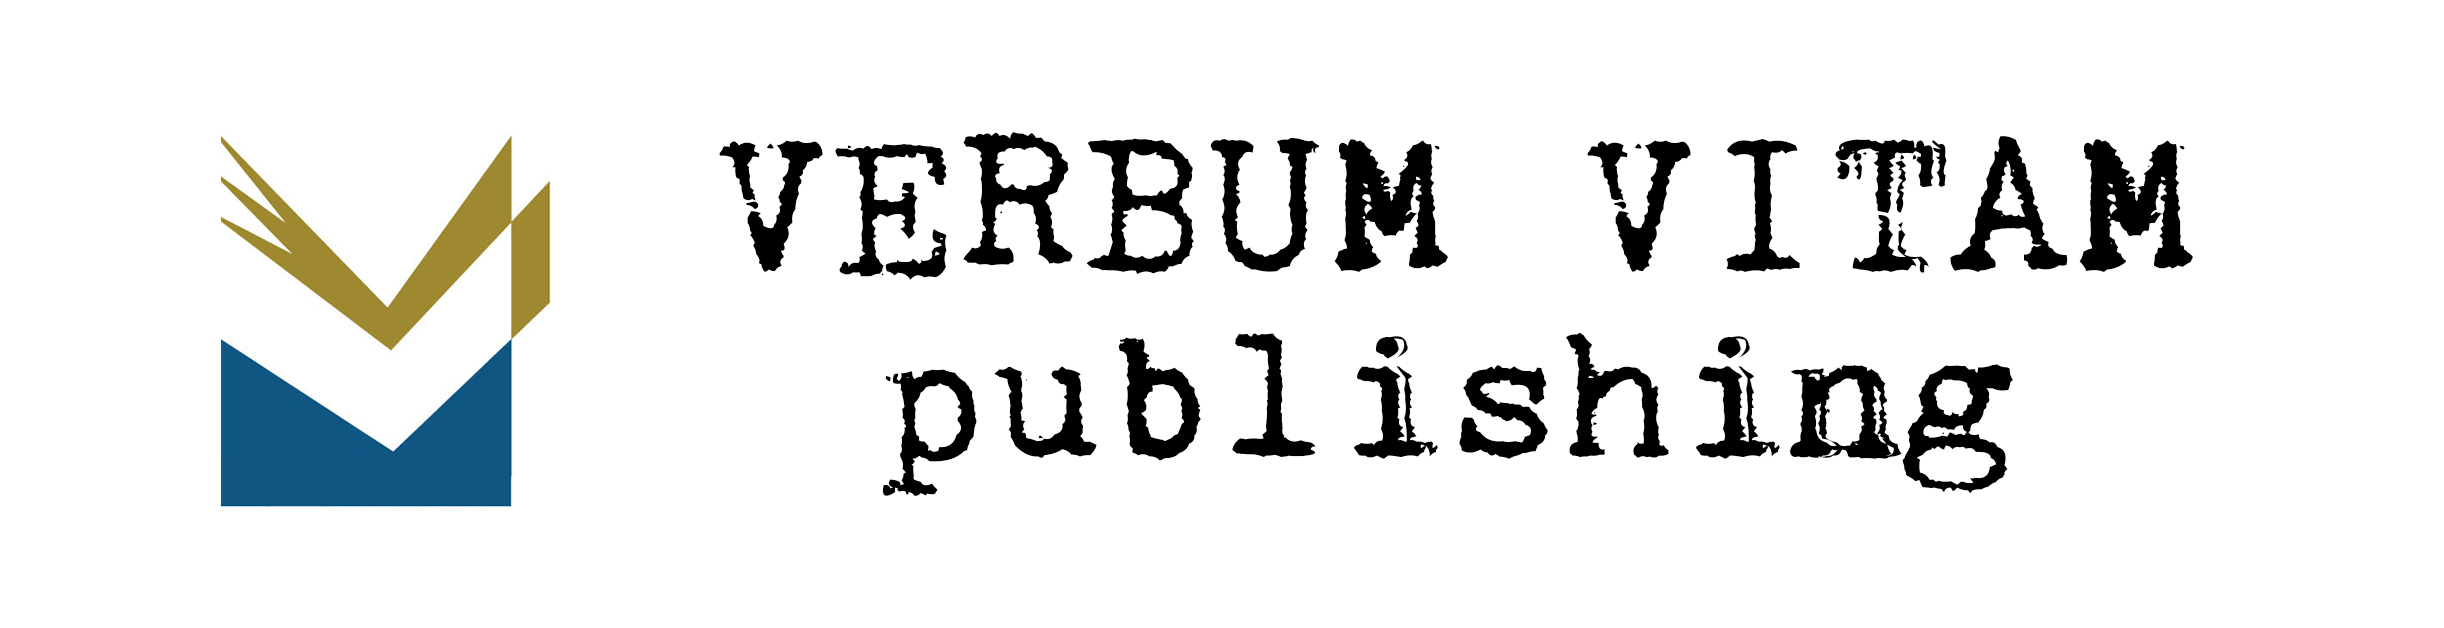 Verbum Vitam publishing